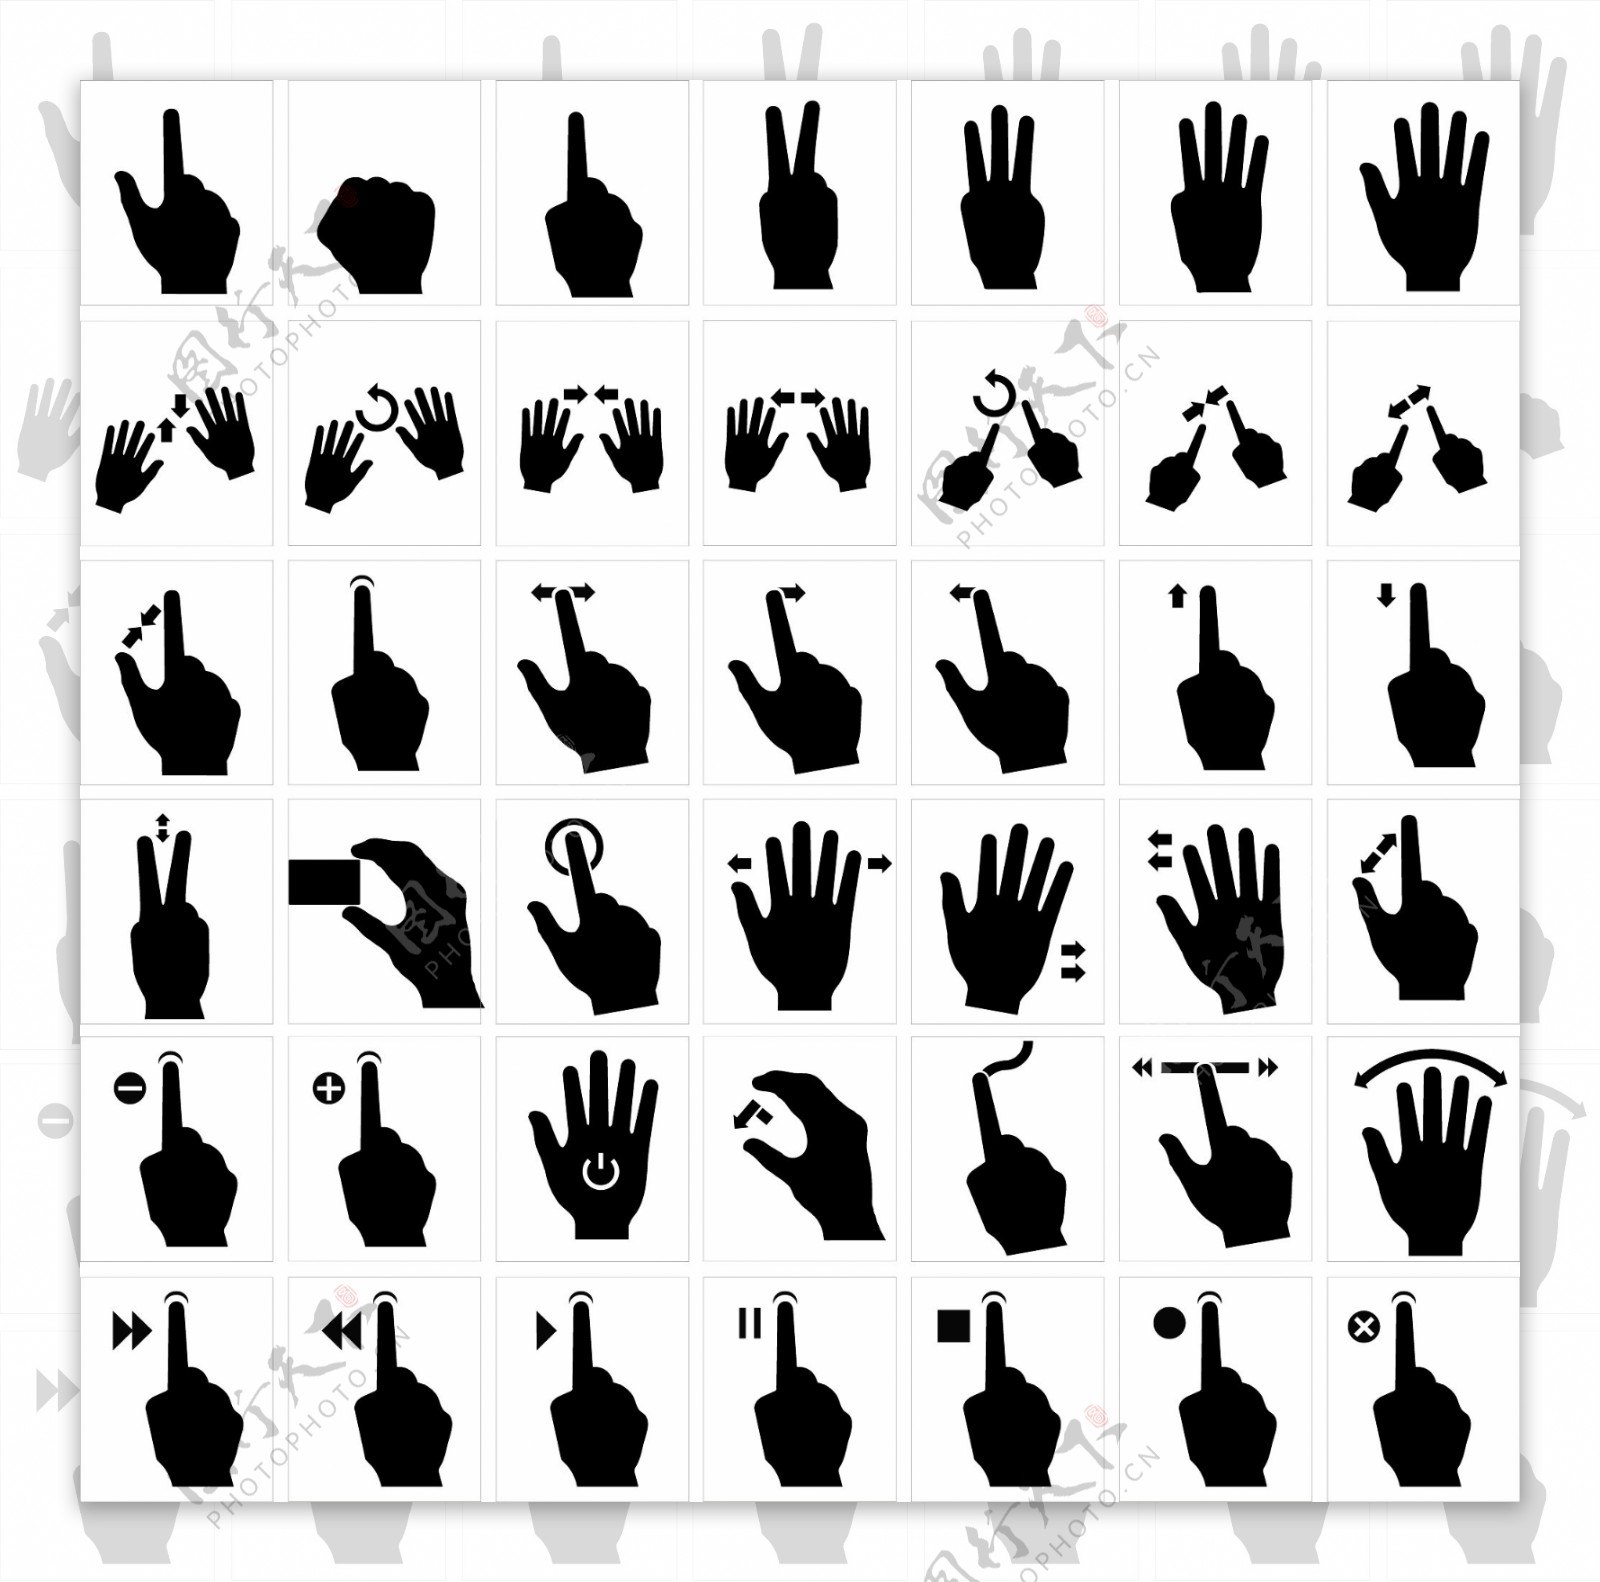 各种常用指示手势矢量素材